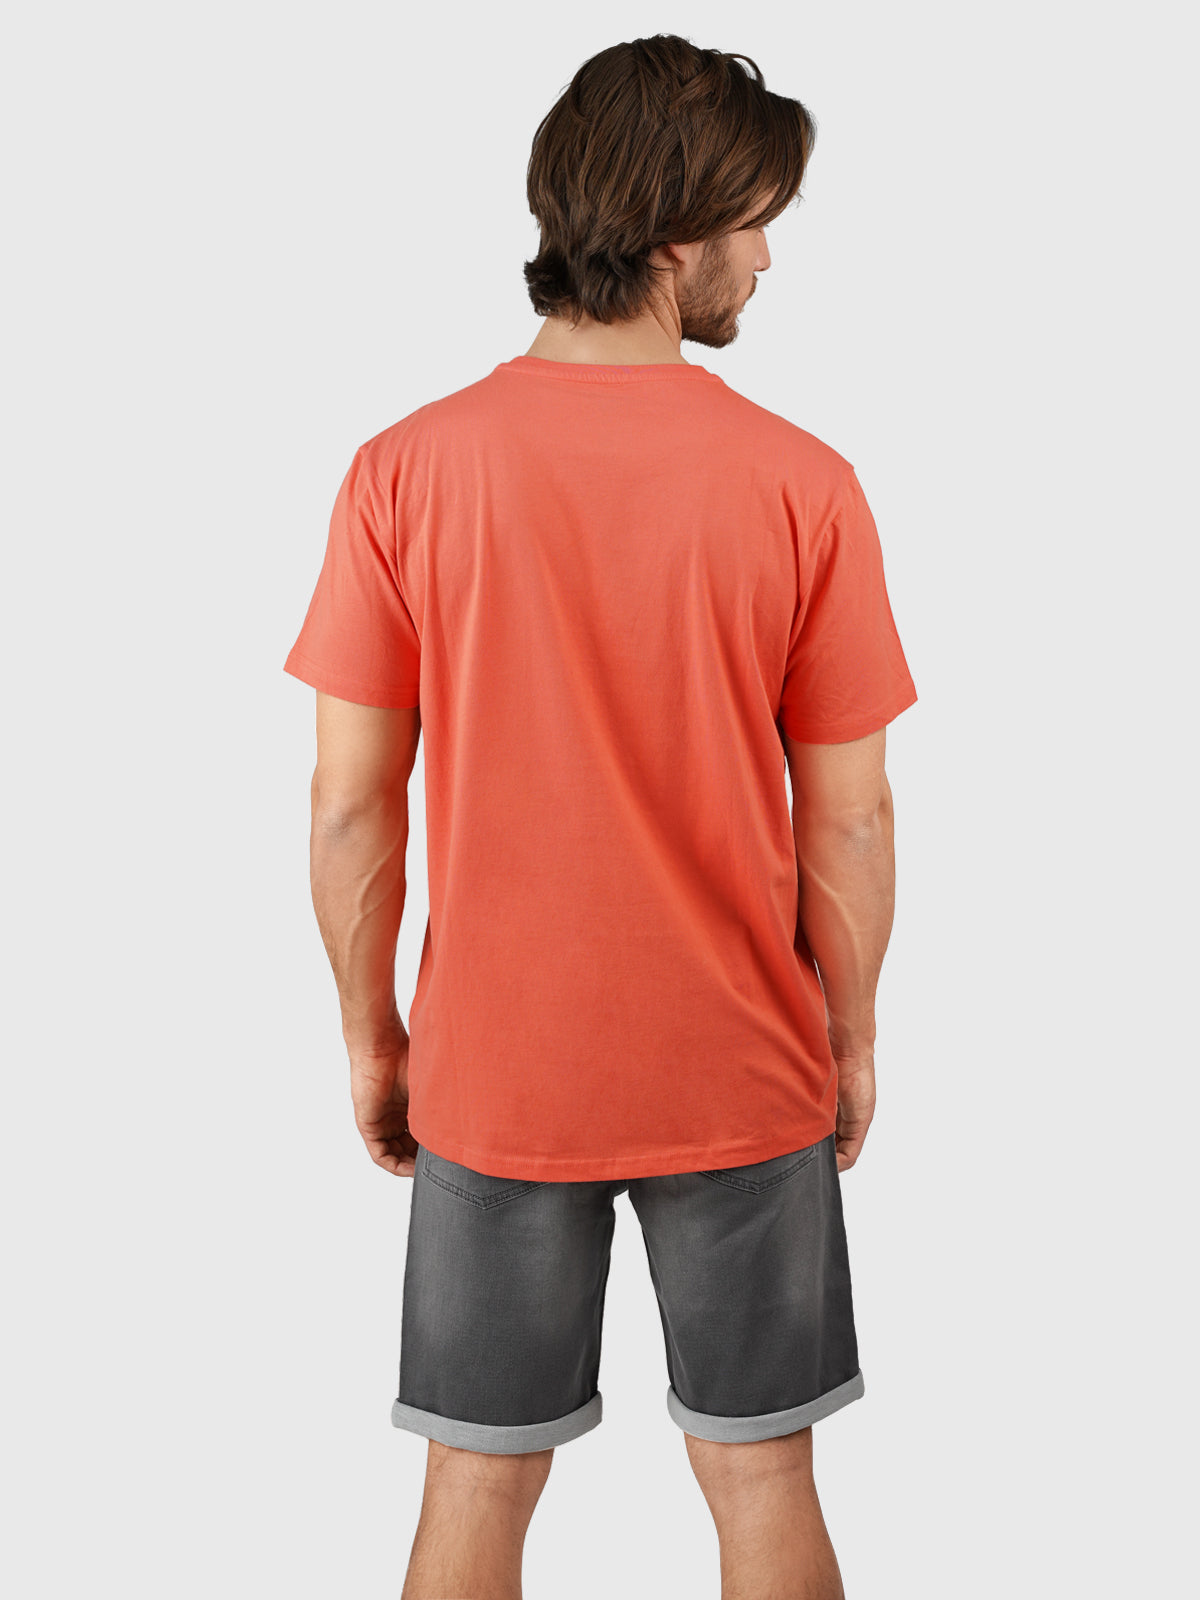 Leeway Herren T-shirt | Red